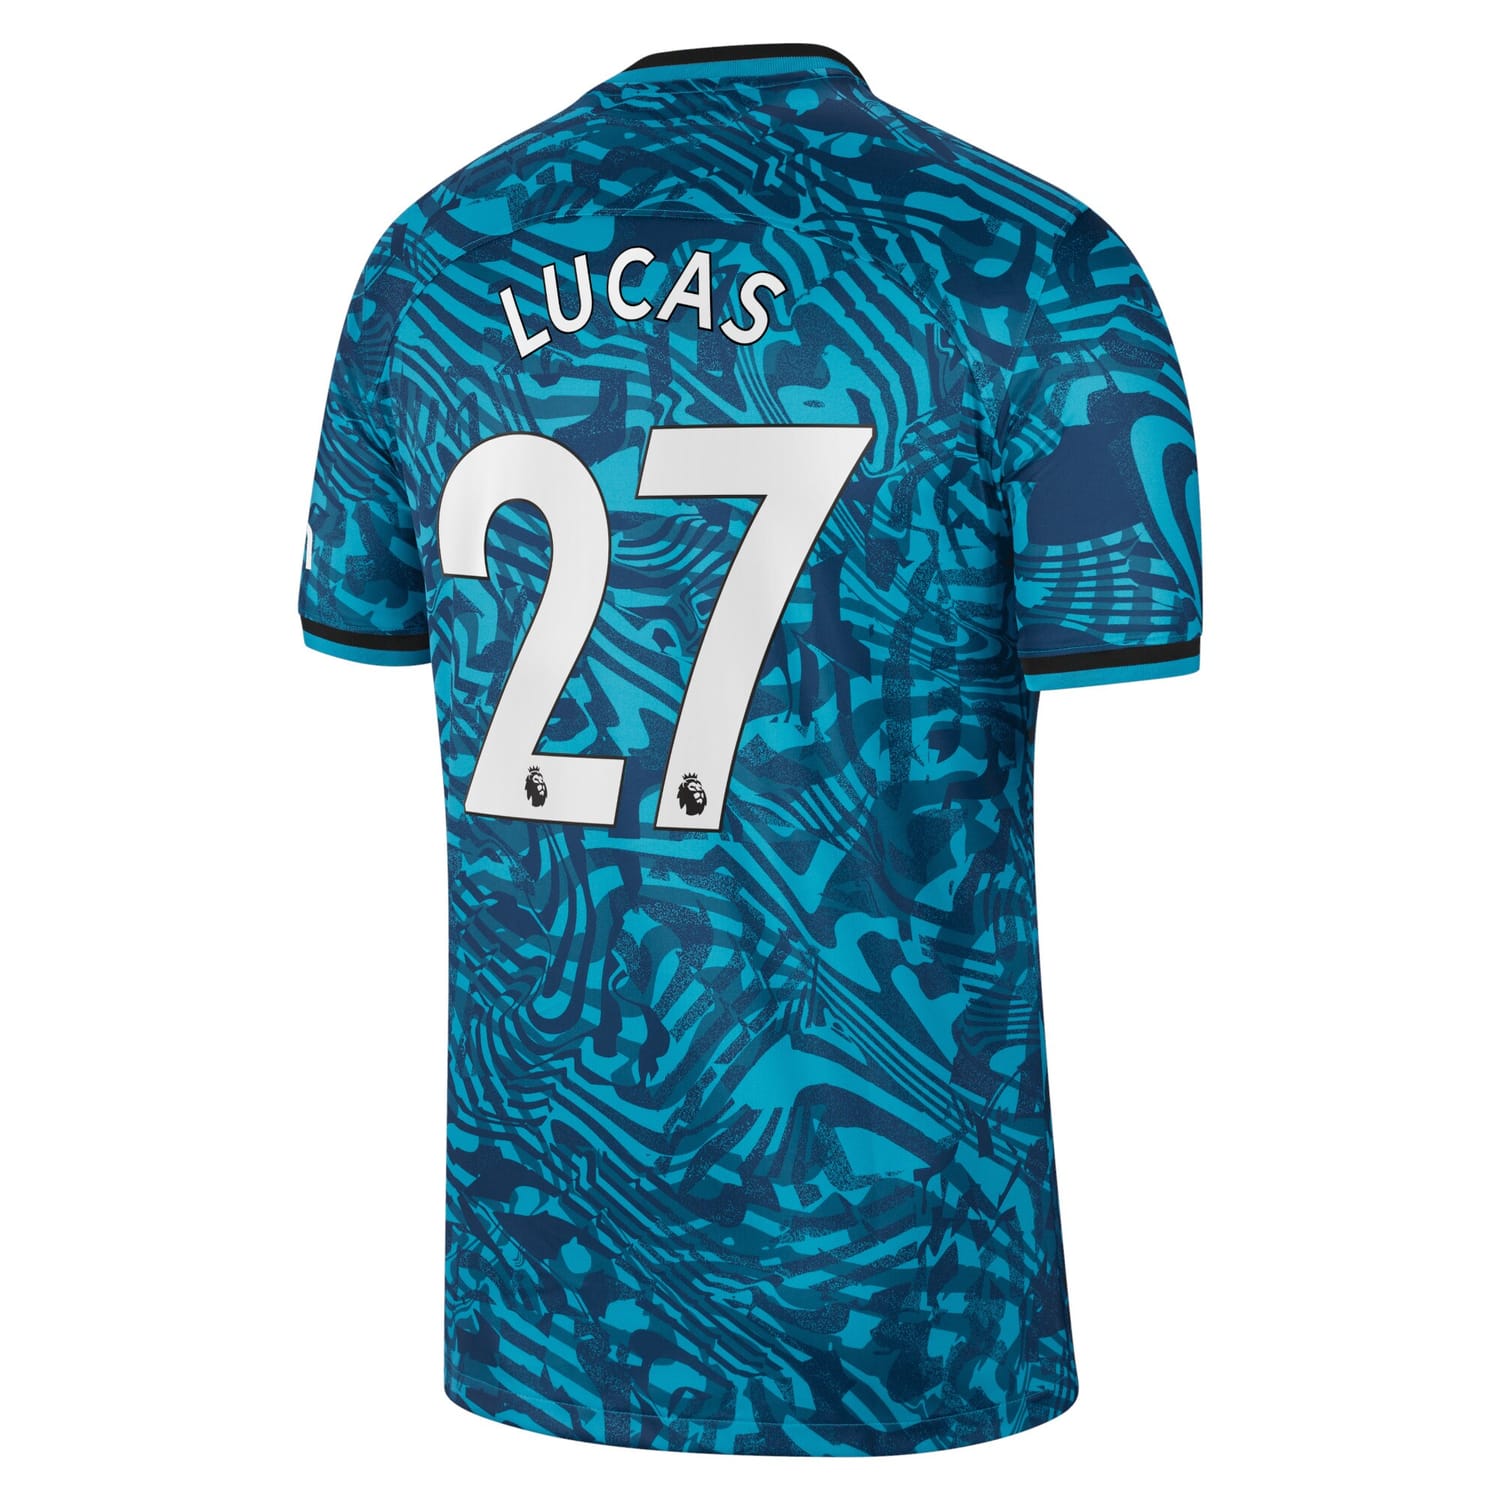 Premier League Tottenham Hotspur Third Jersey Shirt 2022-23 player Lucas Hernandez 27 printing for Men